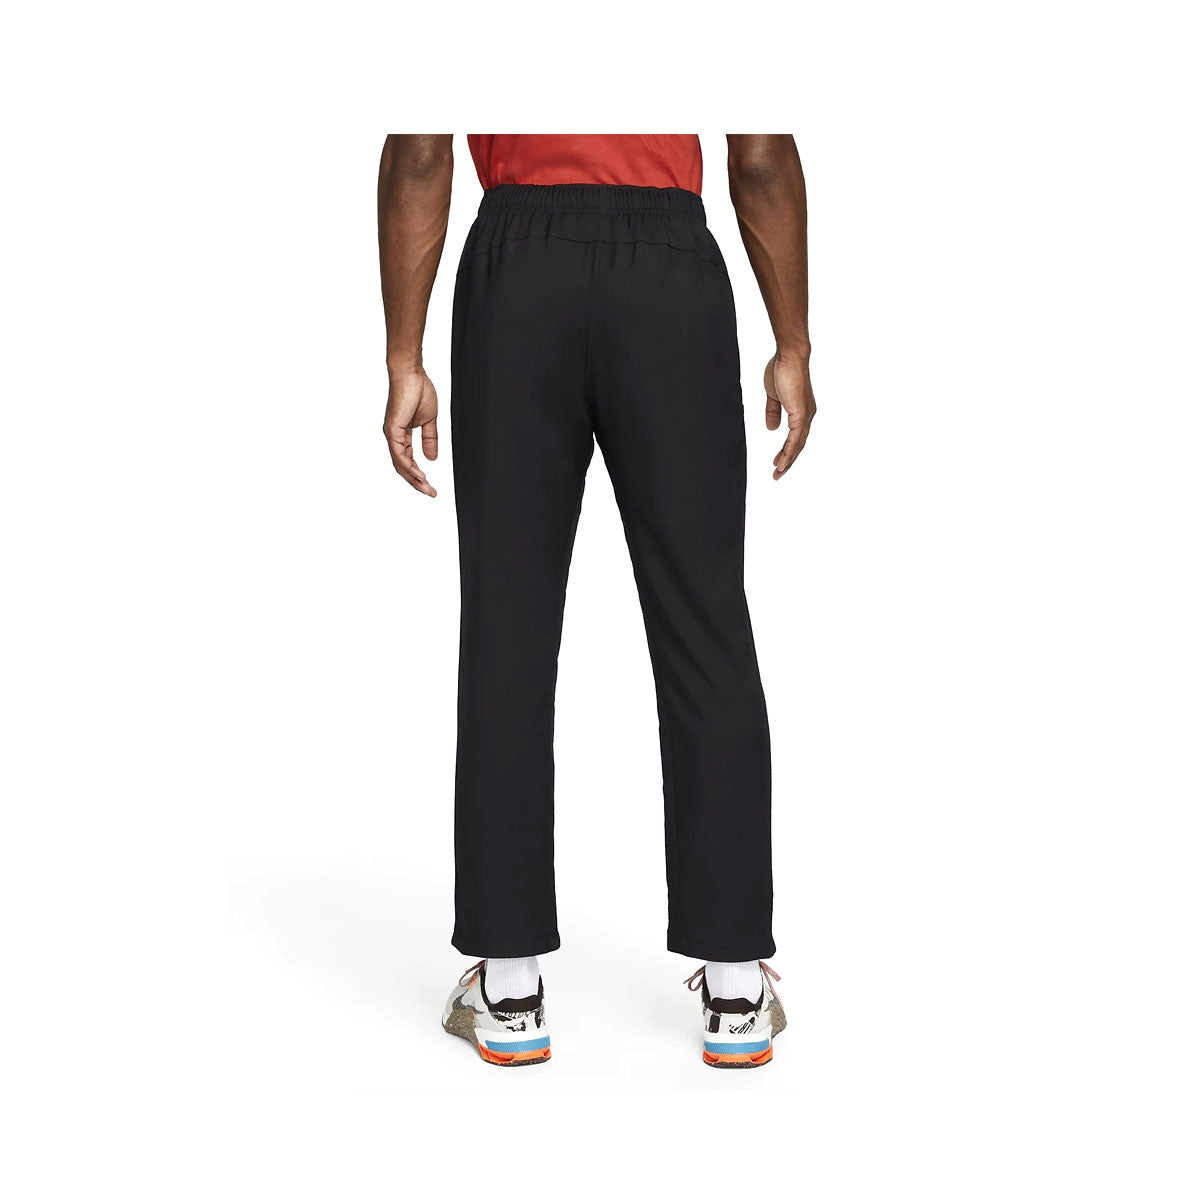 Nike Men's Dri-FIT Woven Training Trousers